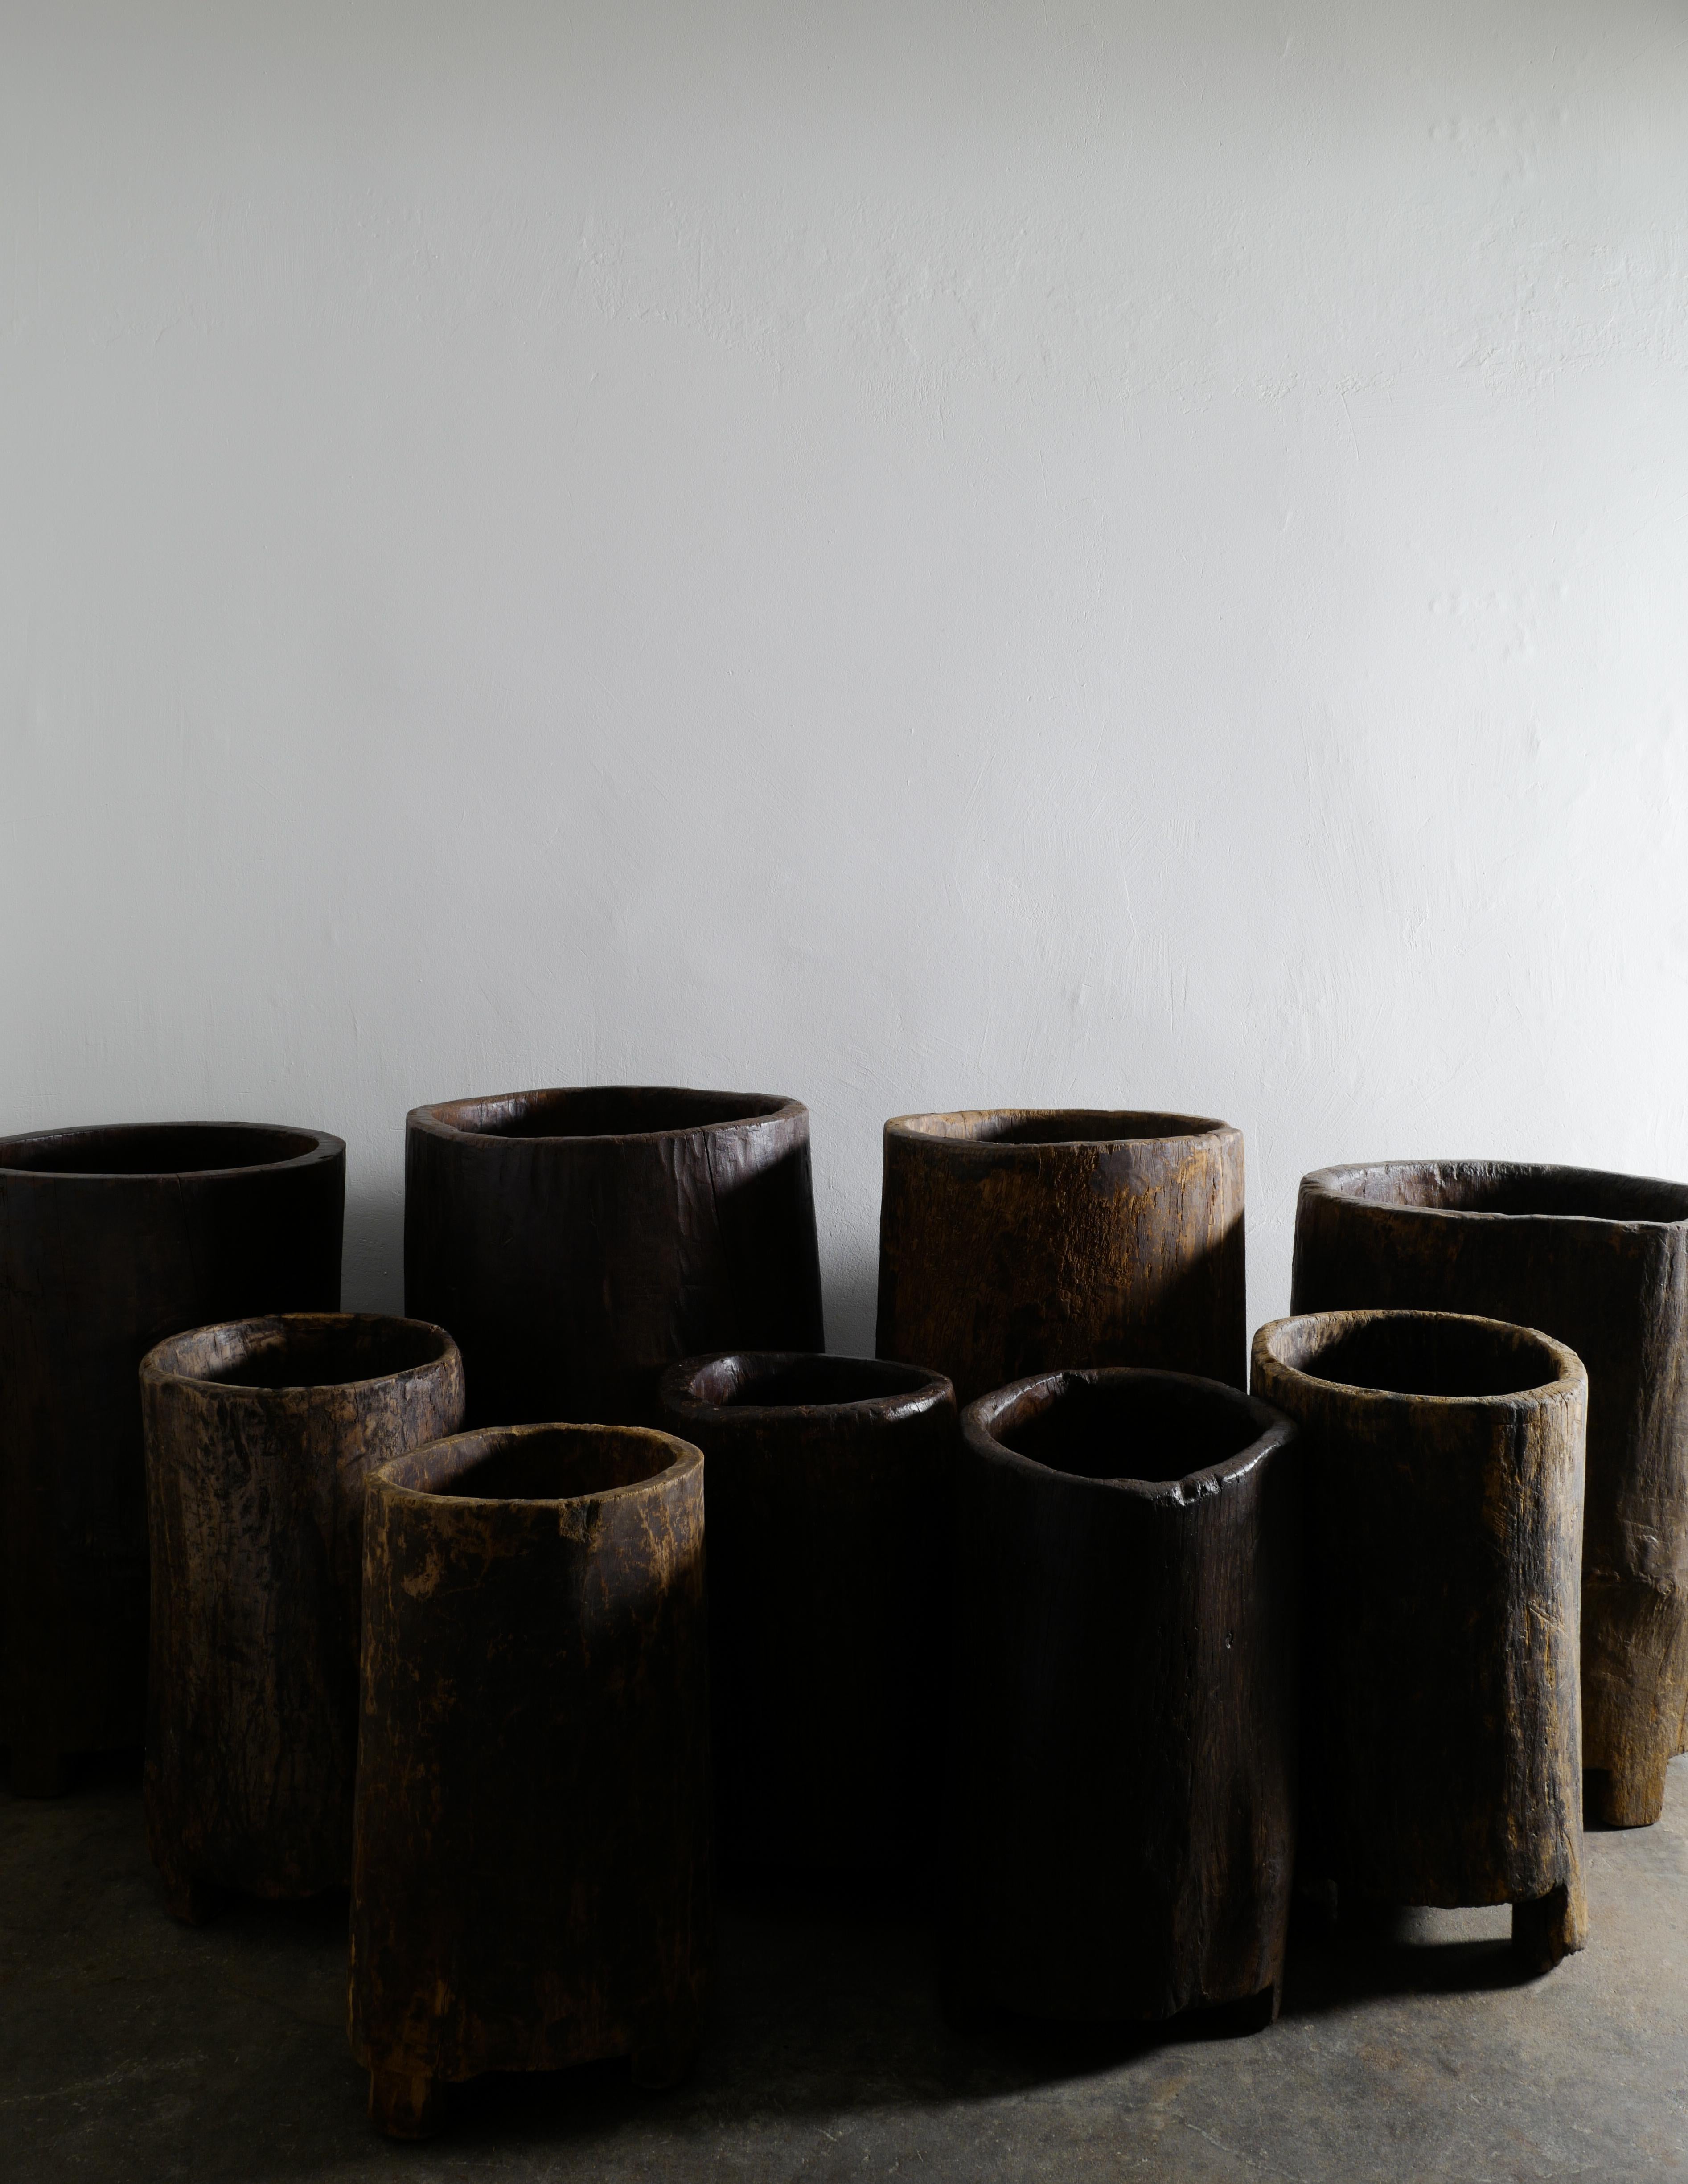 Wooden Teak Naga Pot Barrel Planter in a Wabi Sabi Style, India 2